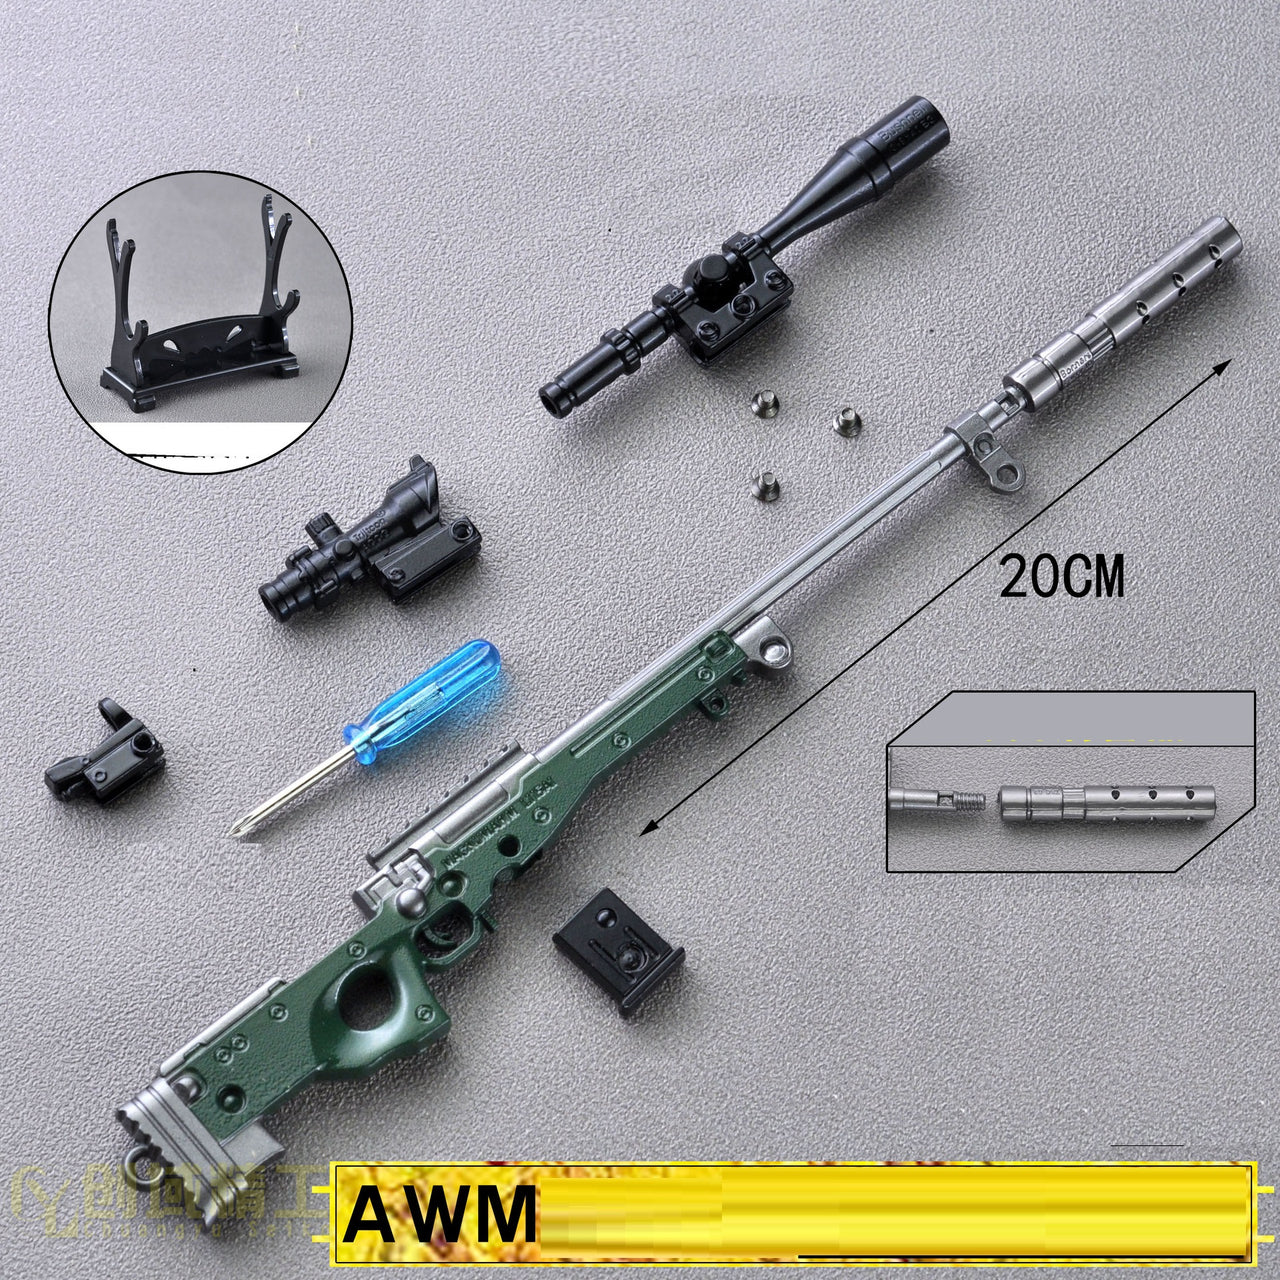 Miniature 98k AWM M24 M416 Toy Keychain